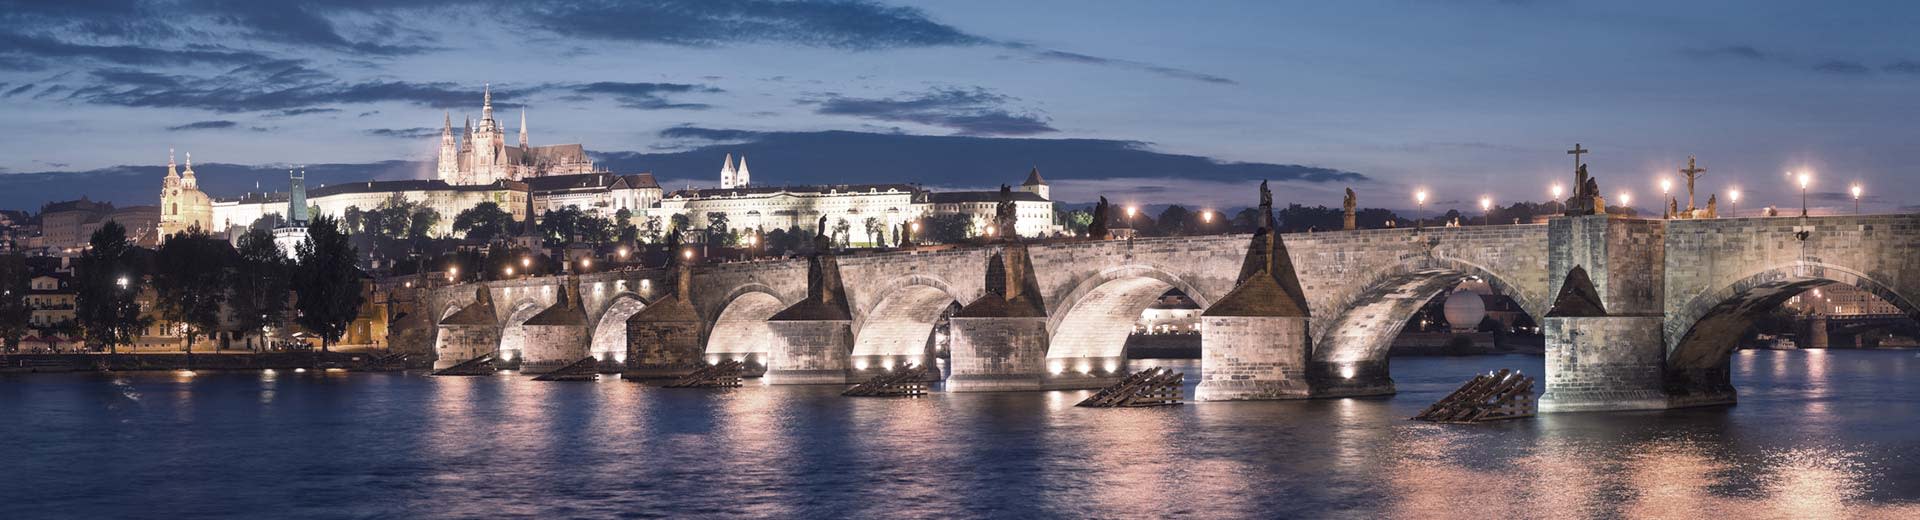 Die berühmte Charles Bridge in Prag ist geschickt unter einem Himmel aus Dämmerung oder Morgengrauen mit historischen Beinen im Hintergrund beleuchtet.